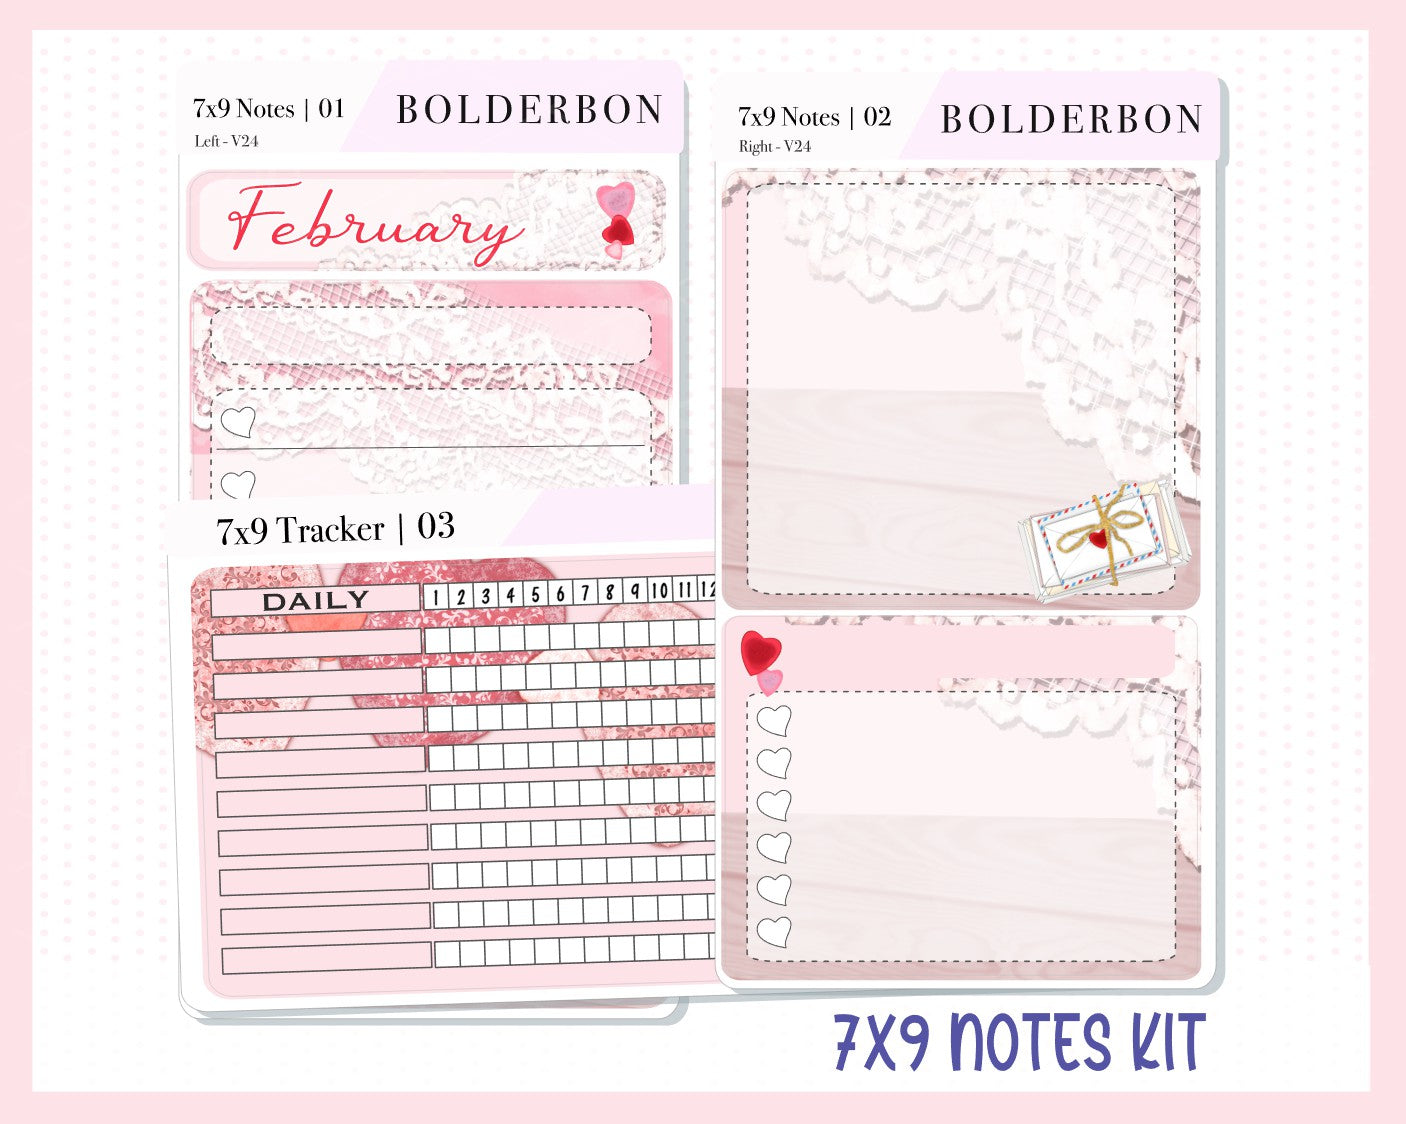 FEBRUARY 7x9 Notes Kit || Planner Sticker Kit for Erin Condren Dashboard